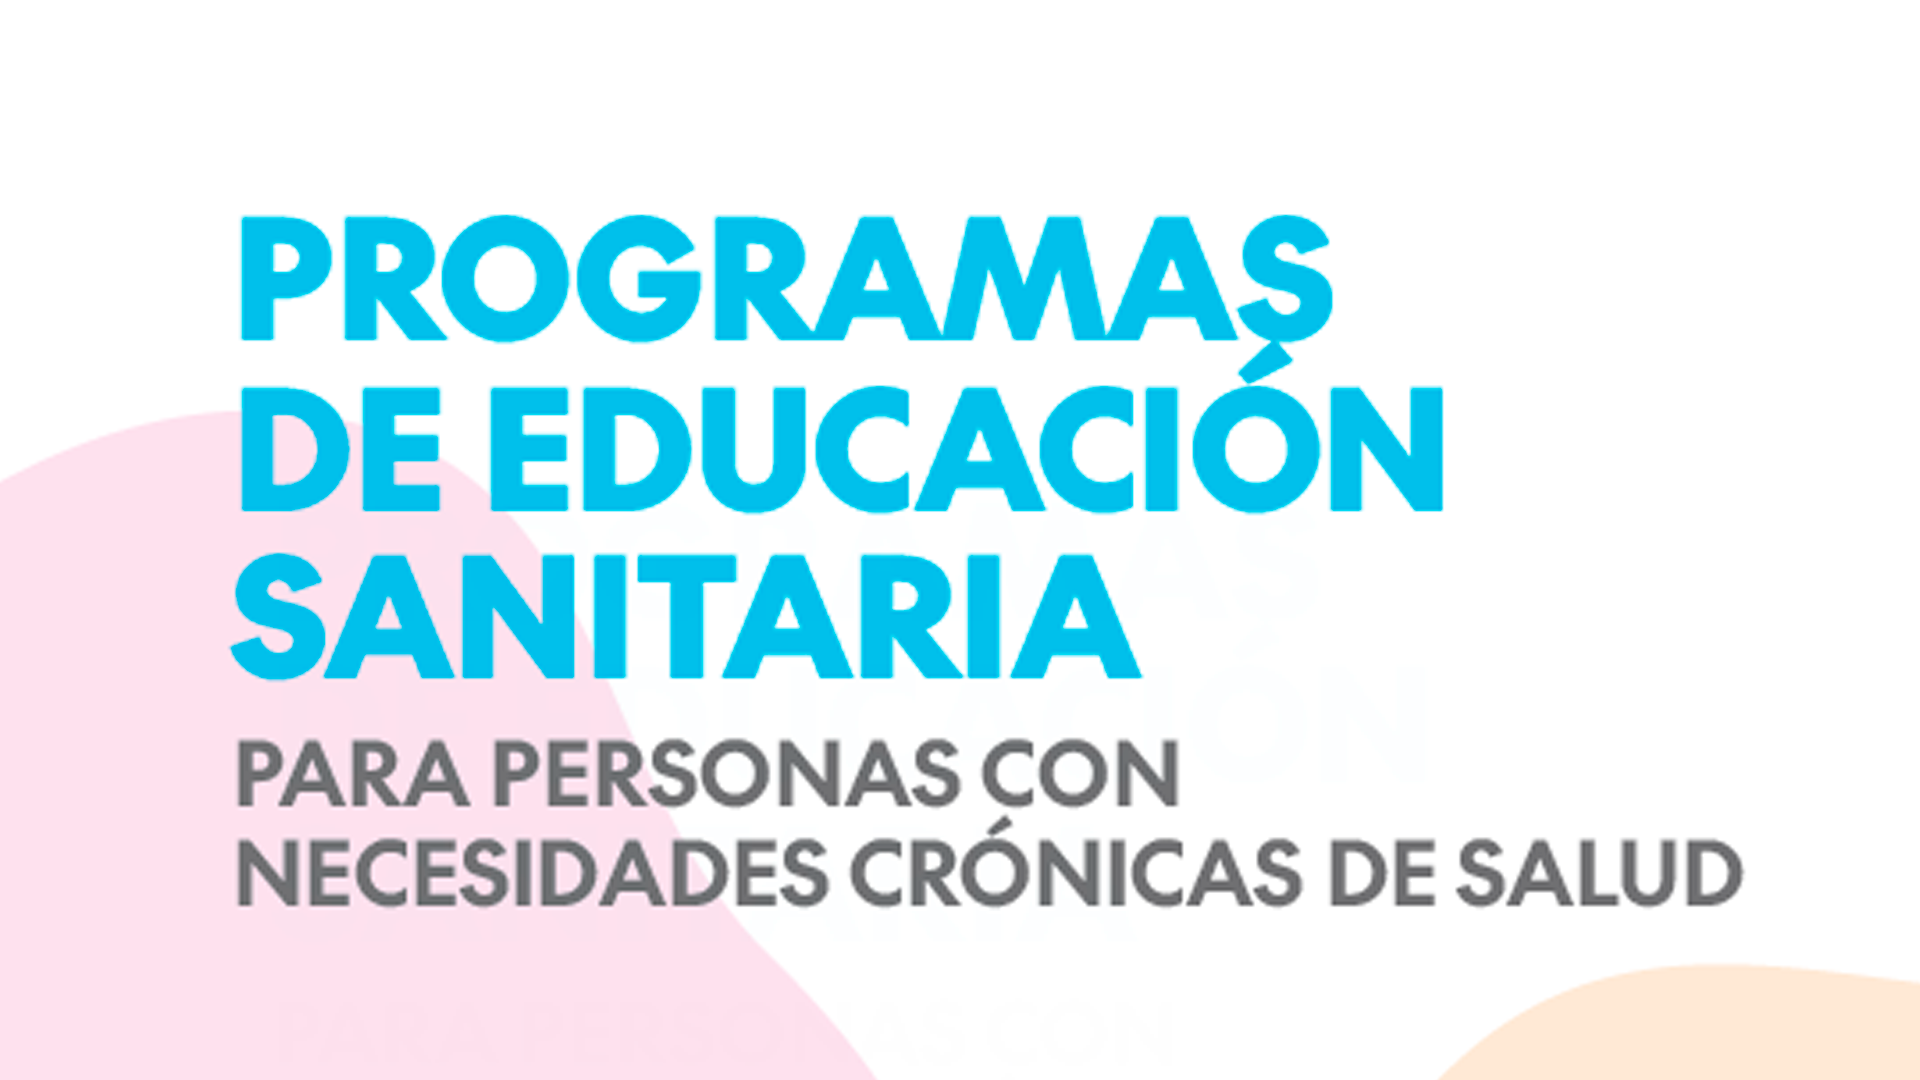 La POP analiza los programas de educación sanitaria para personas con necesidades crónicas de salud en España